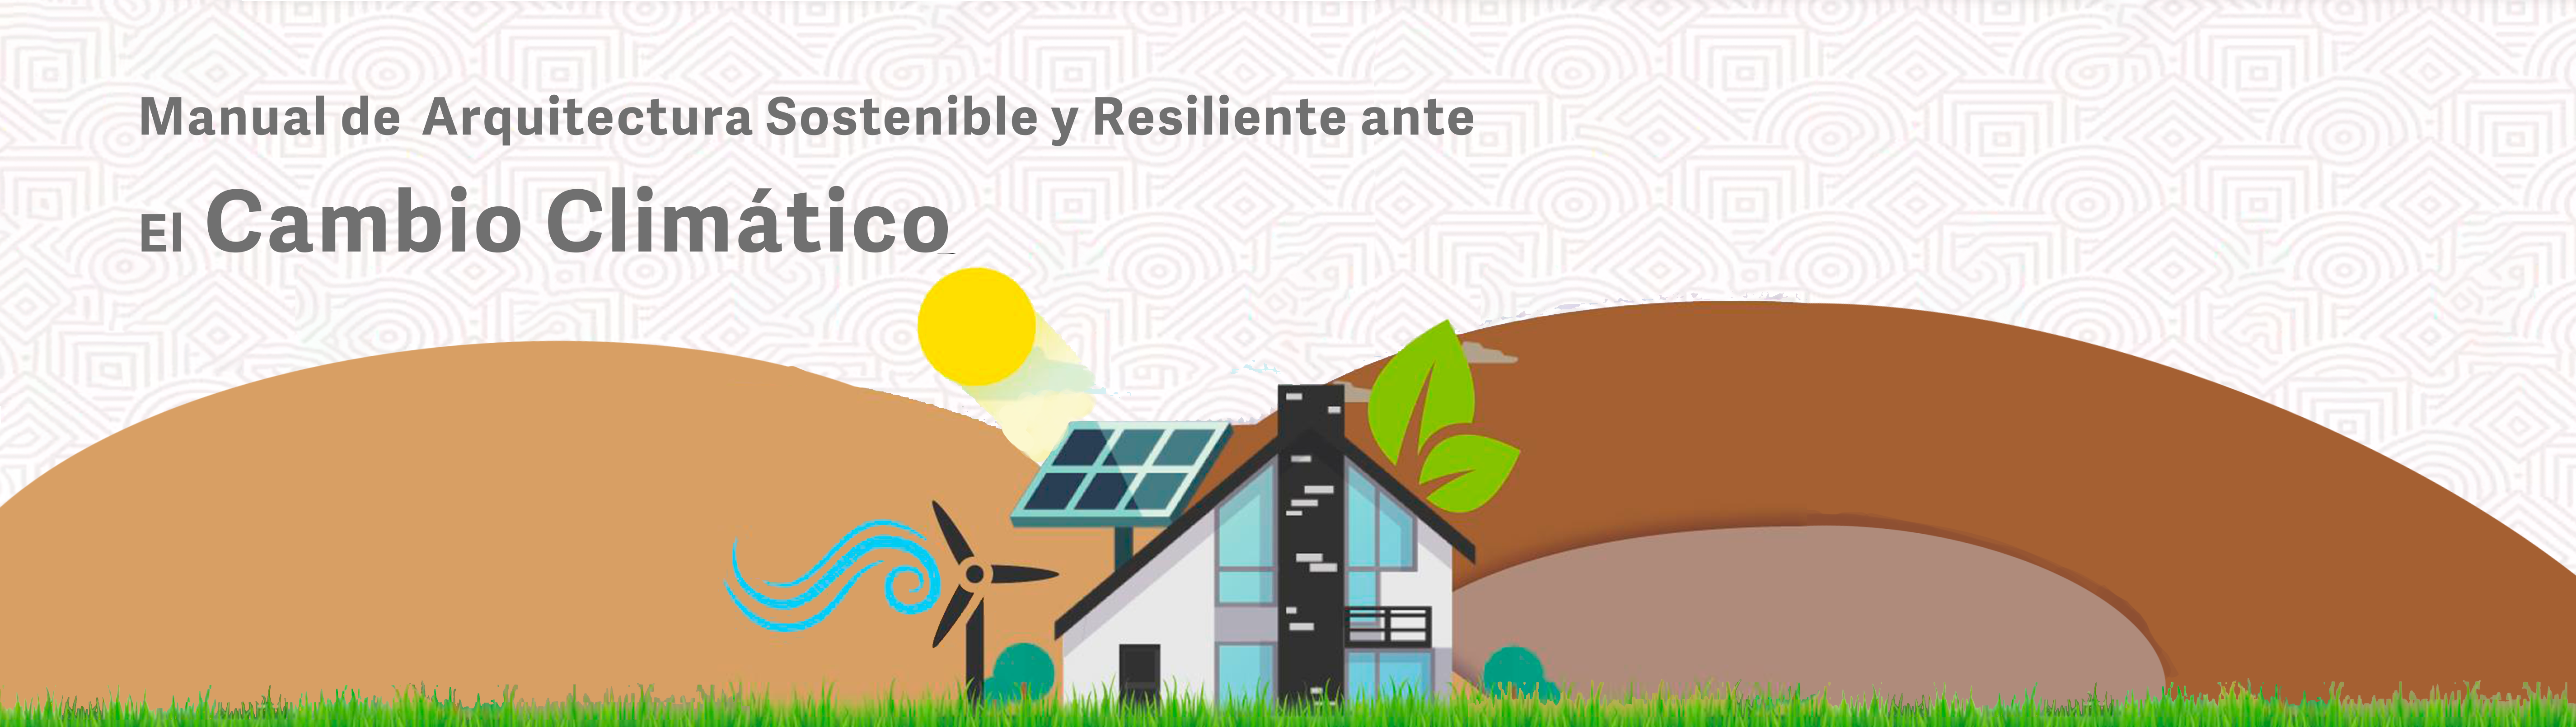 Manual de Arquitectura Sostenible y Resiliente ante el Cambio Climático